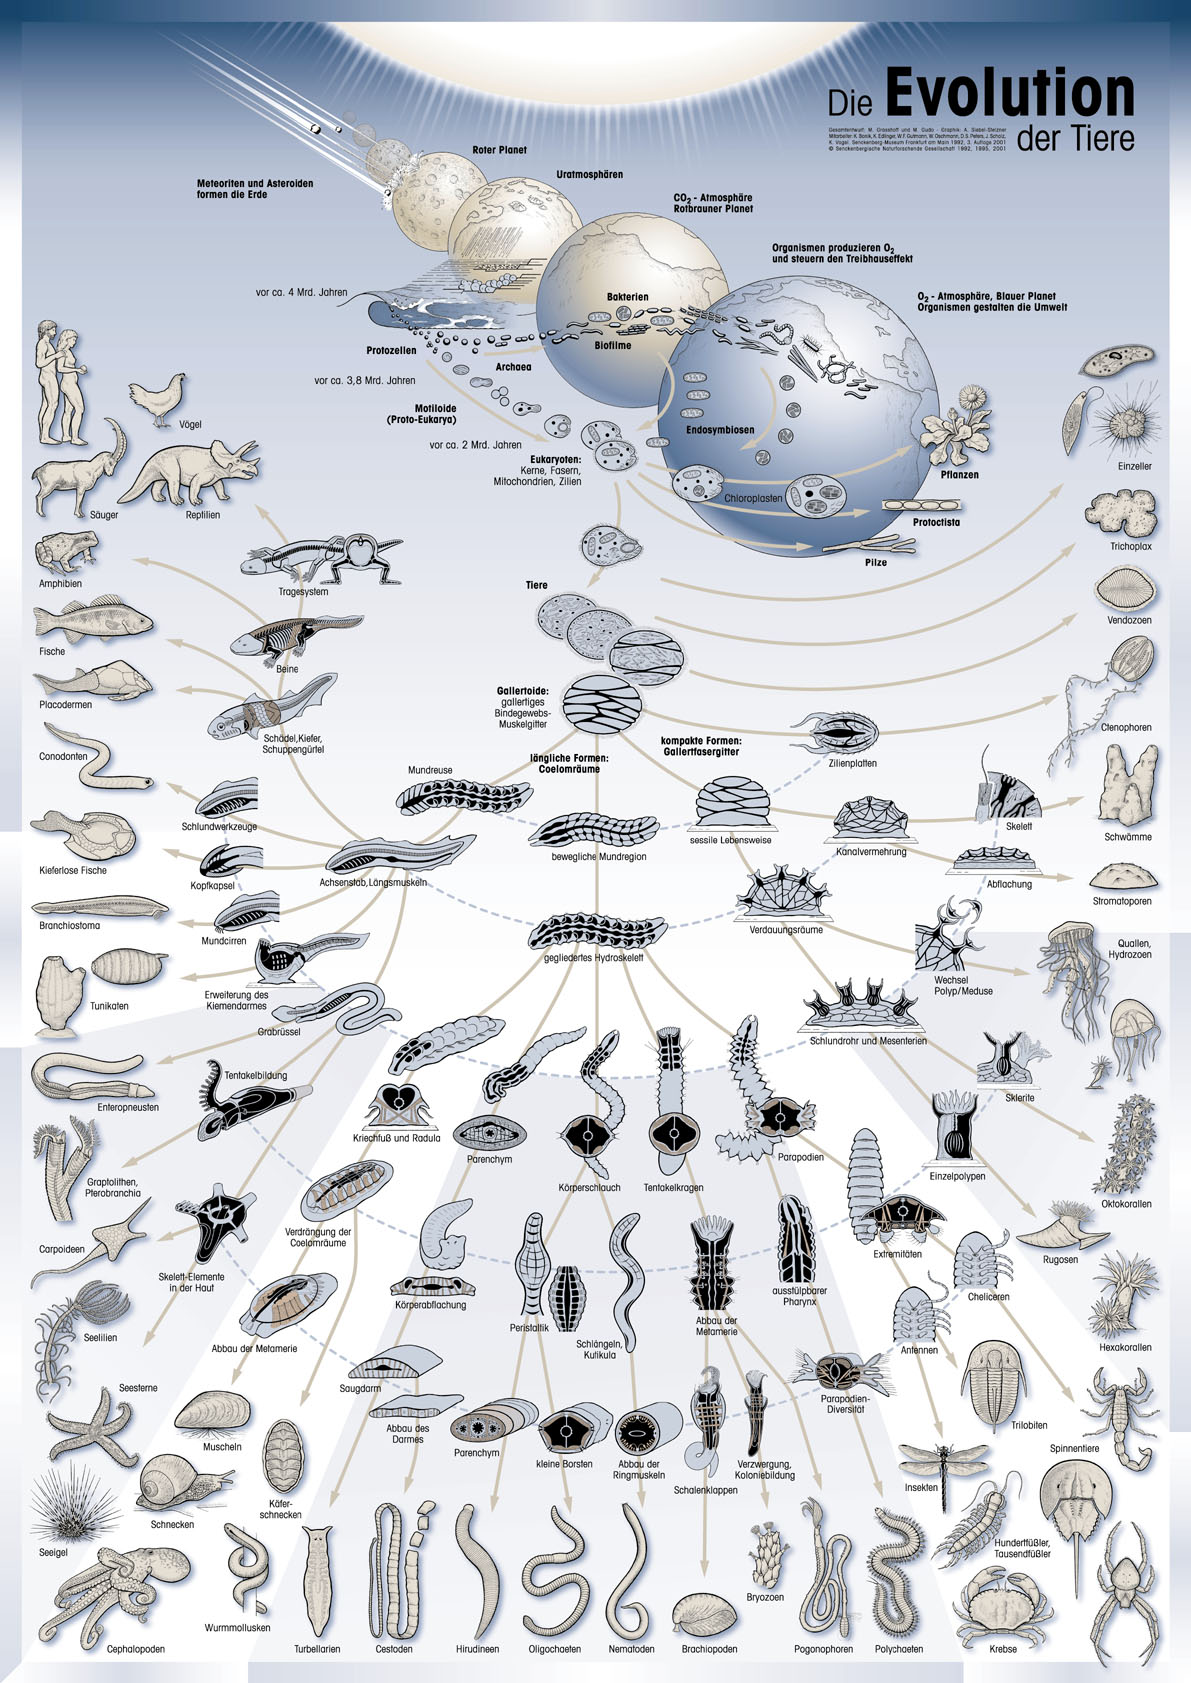 一张地球地质与生命演化的巨图,很直观简明